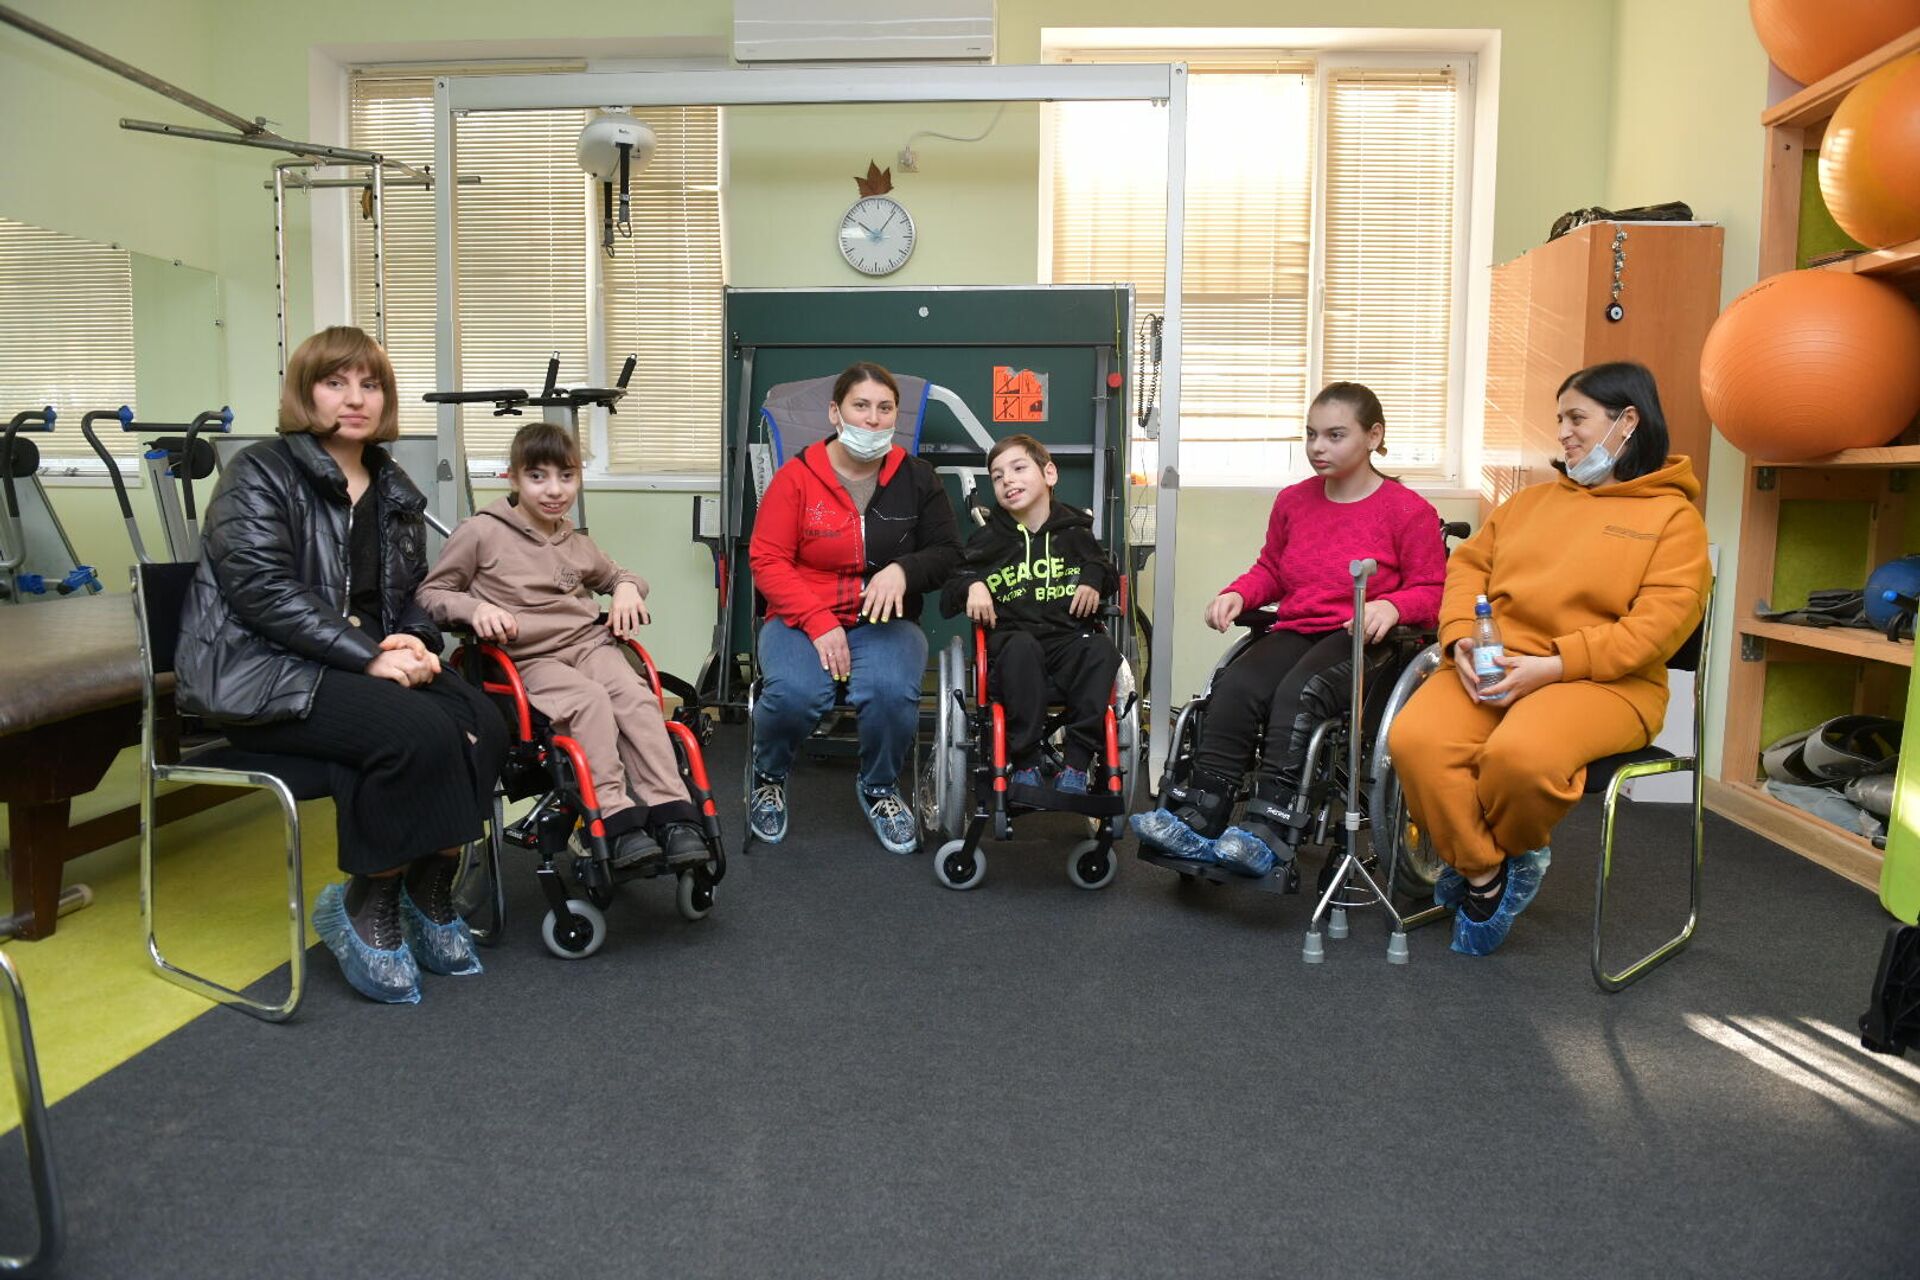 Благотворительный фонд Ашана передает инвалидные коляски  - Sputnik Аҧсны, 1920, 16.12.2021